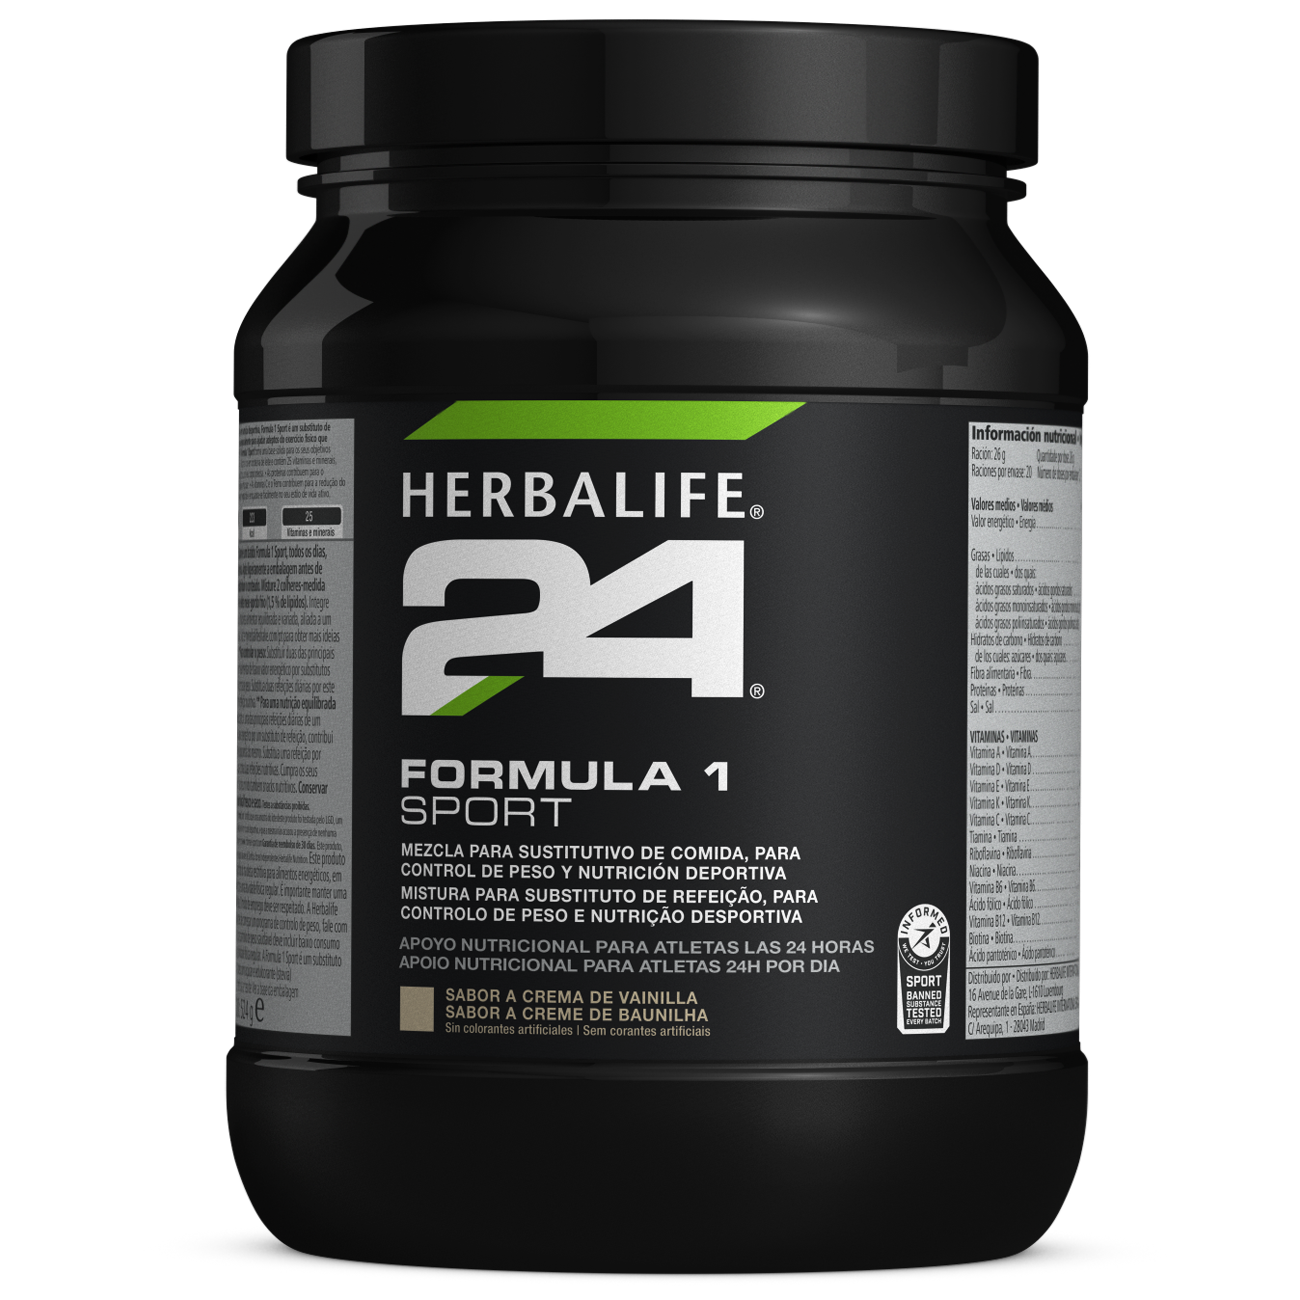 Herbalife 24 Fórmula 1 Sport Nutrição Desportiva Creme de Baunilha product shot